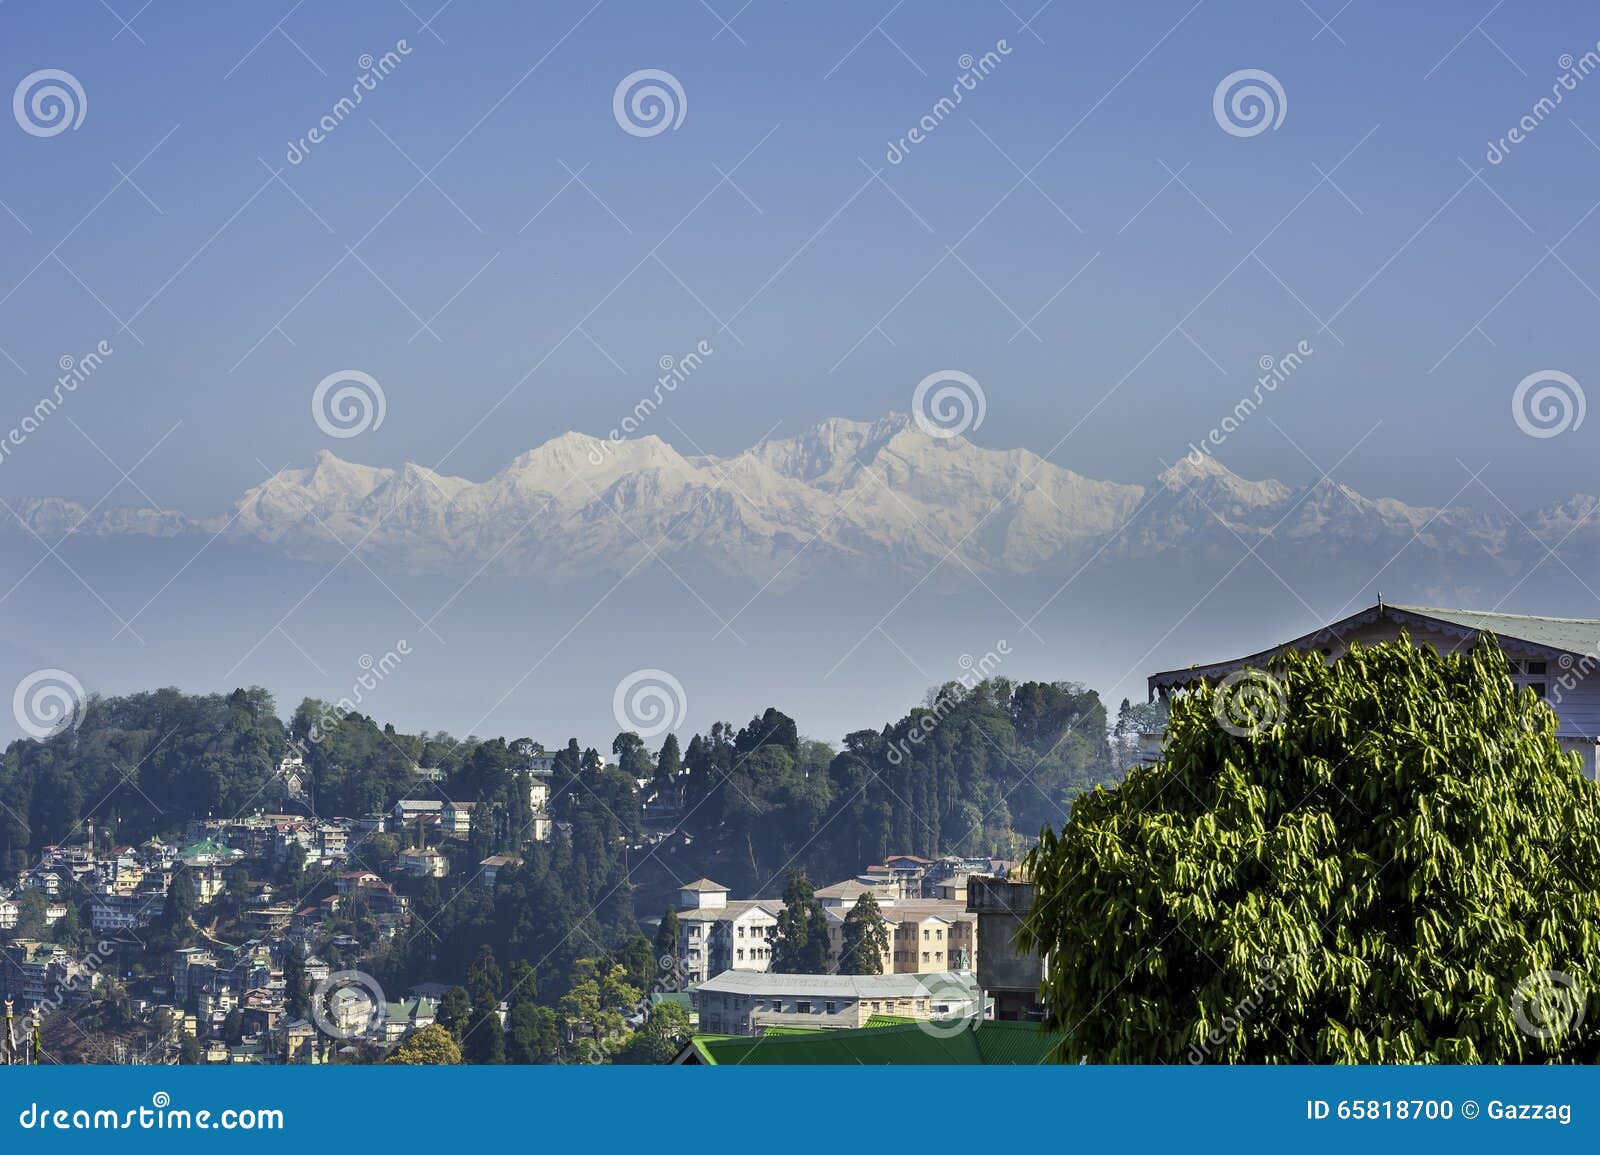 mount kanchenjunga and darjeeling